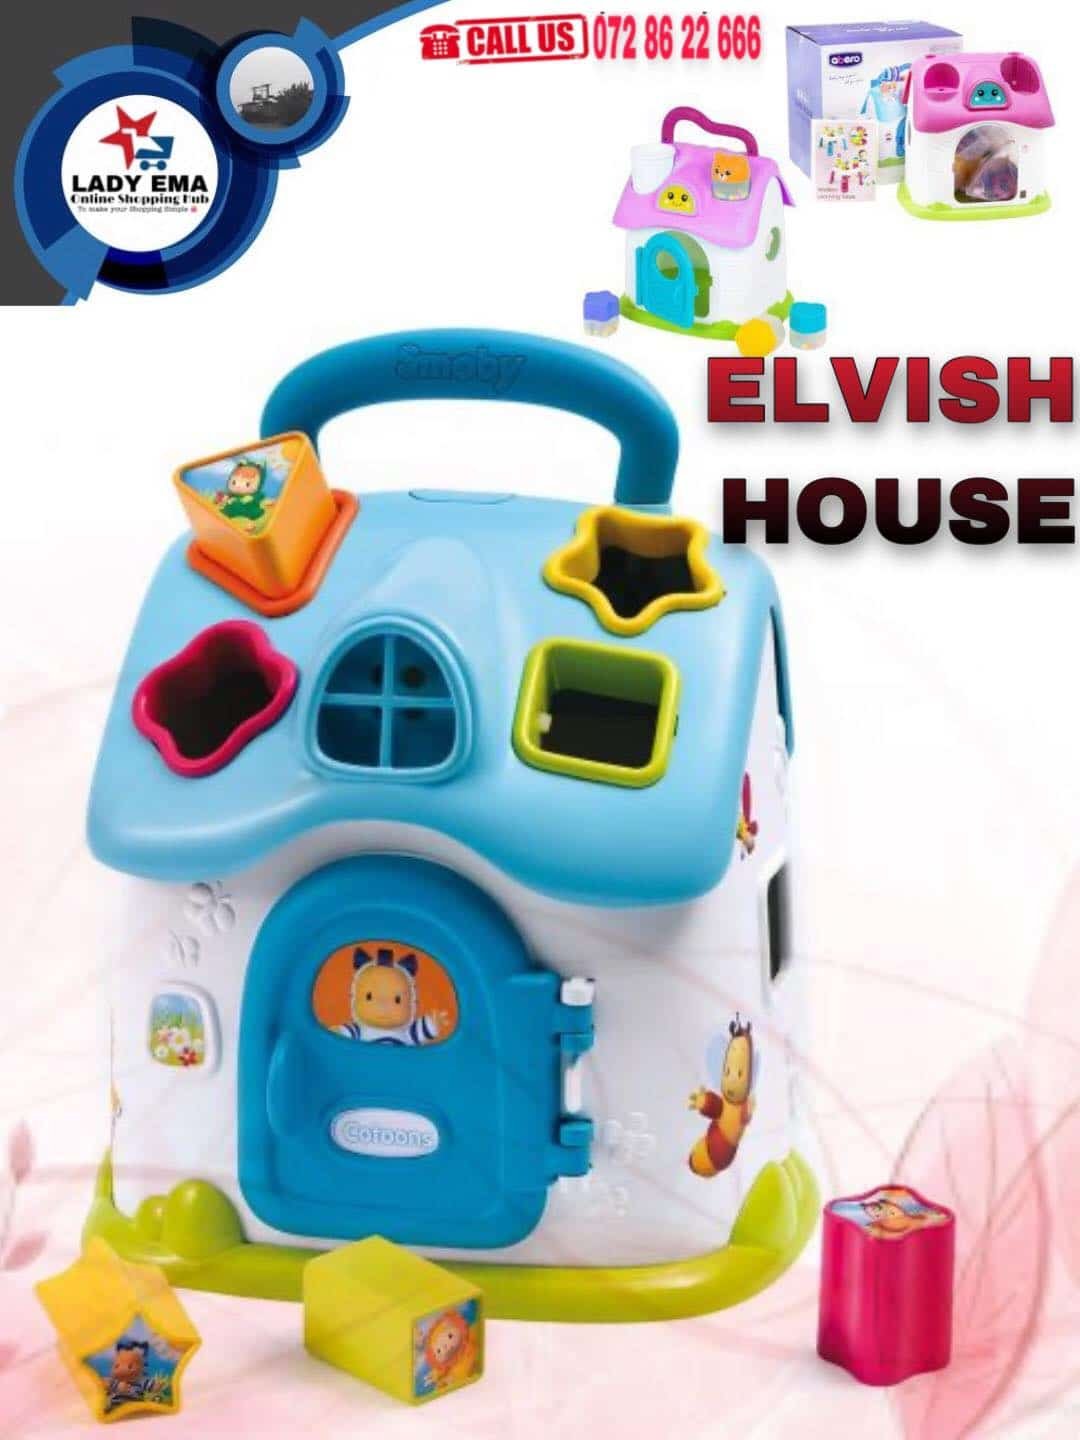 ELVISH HOUSE